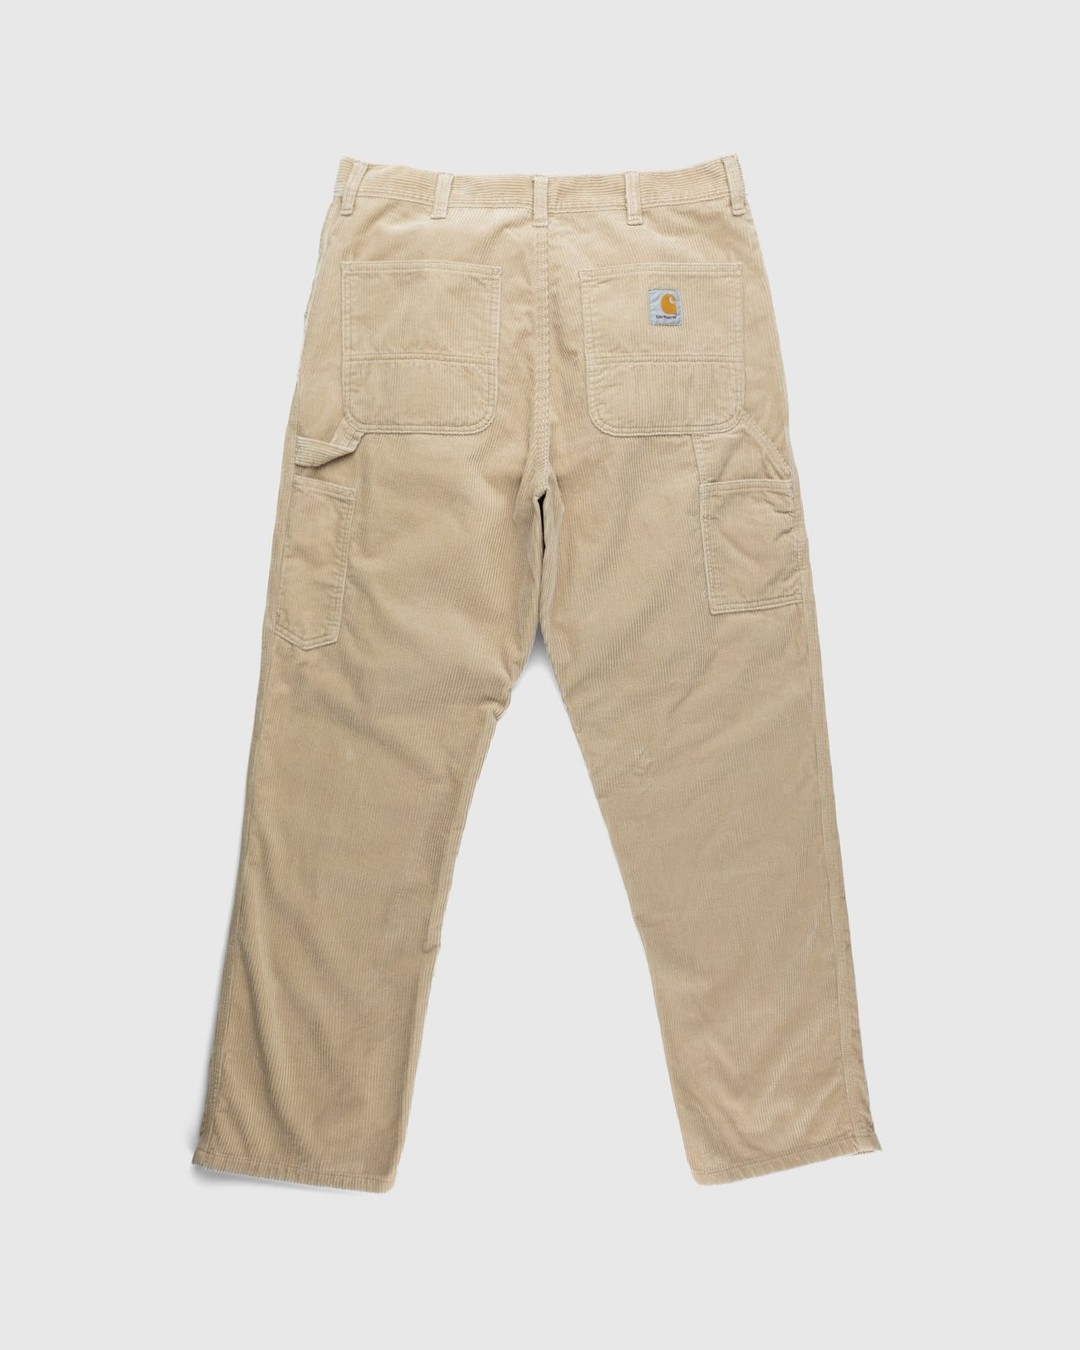 Carhartt WIP – Ruck Single Knee Pant Beige - Pants - Brown - Image 2